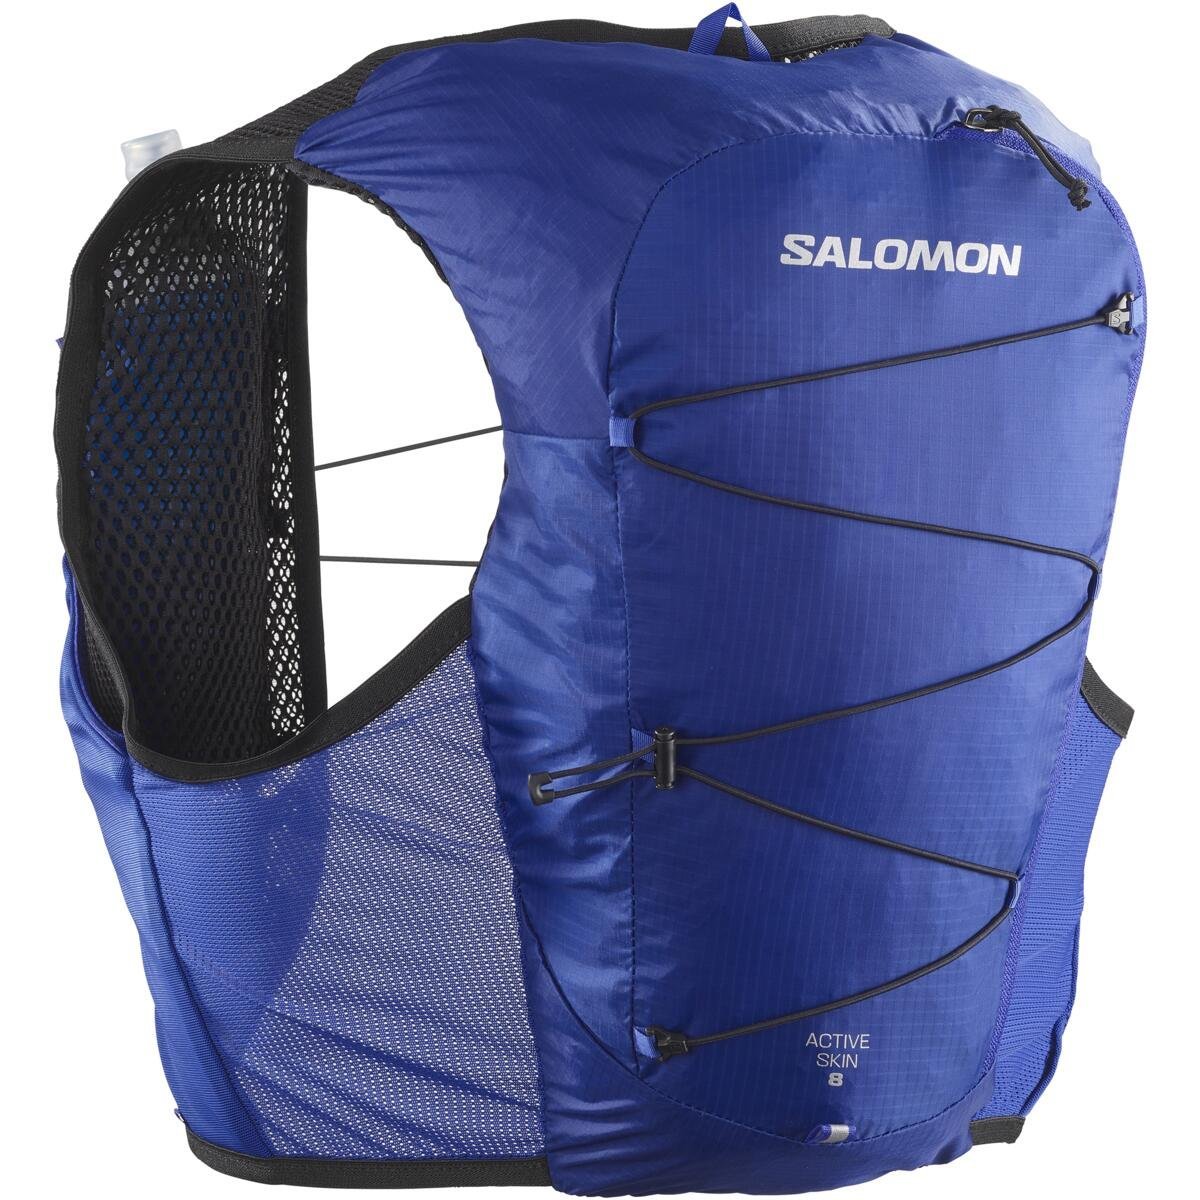 Batoh Salomon Active Skin 8 Set - modrá